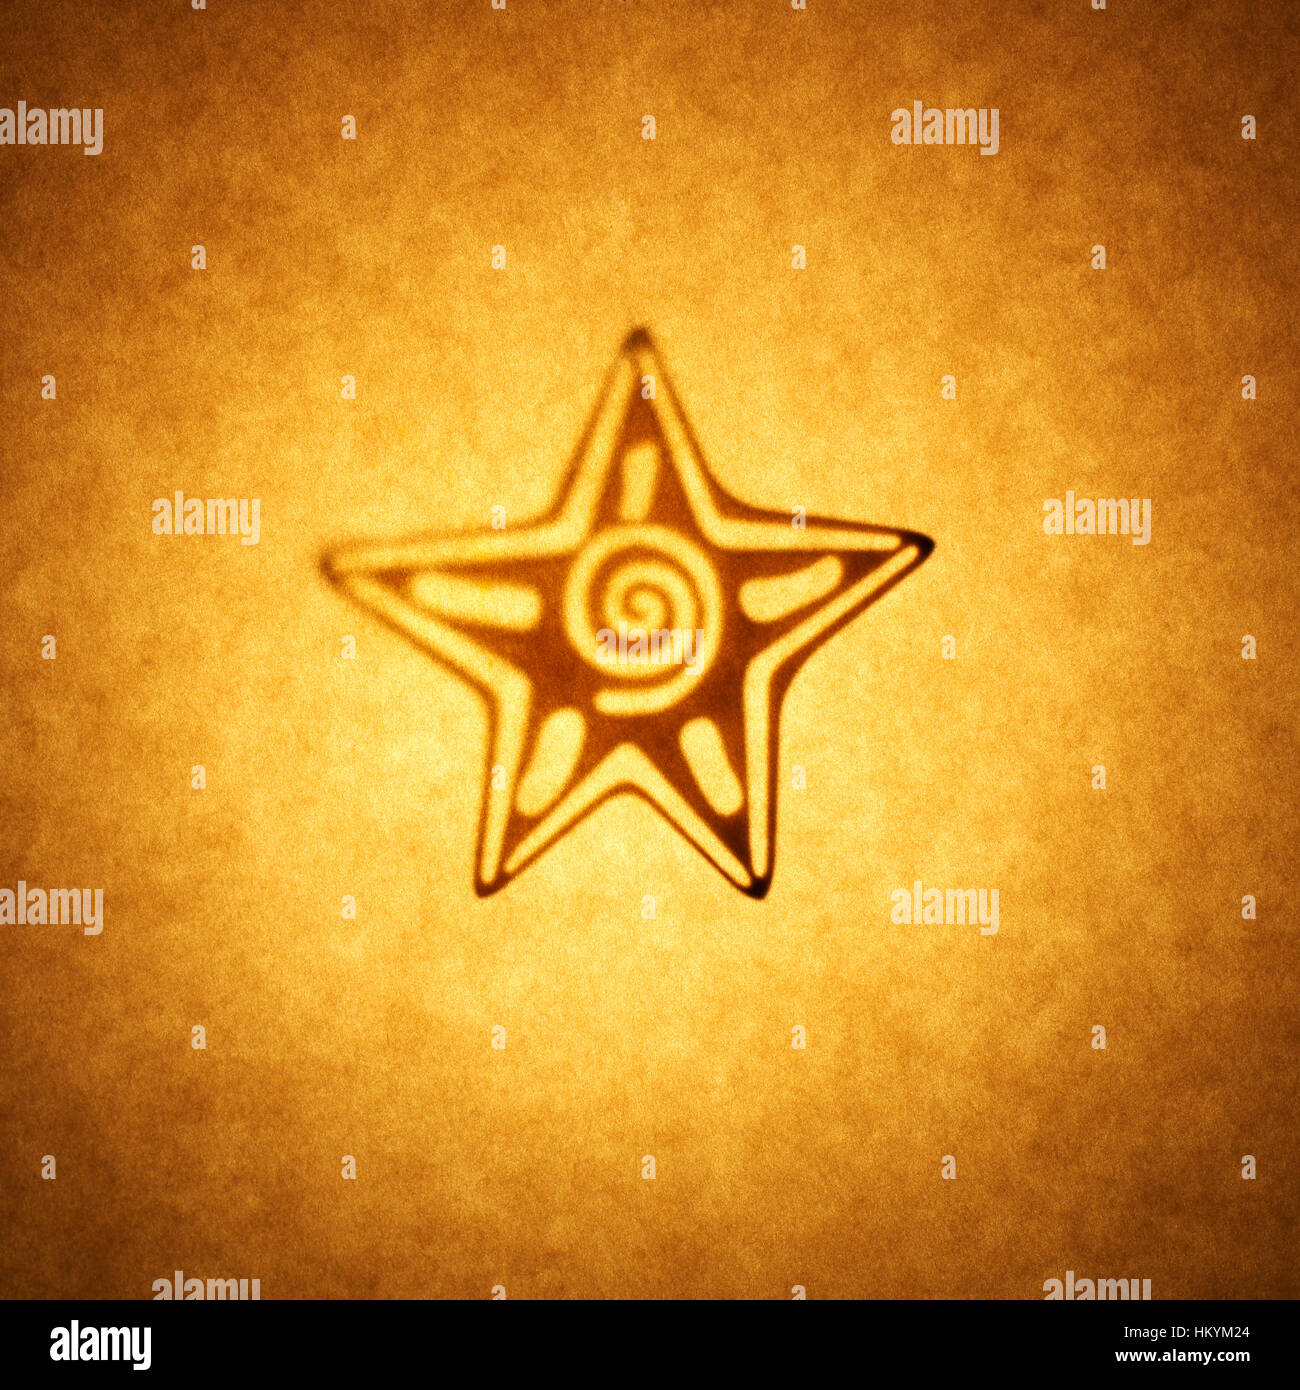 Beleuchtete Silhouette des 5-Punkt-Sternform Ausschneiden gegen Braunton Papier mit spot-Highlight. Stockfoto